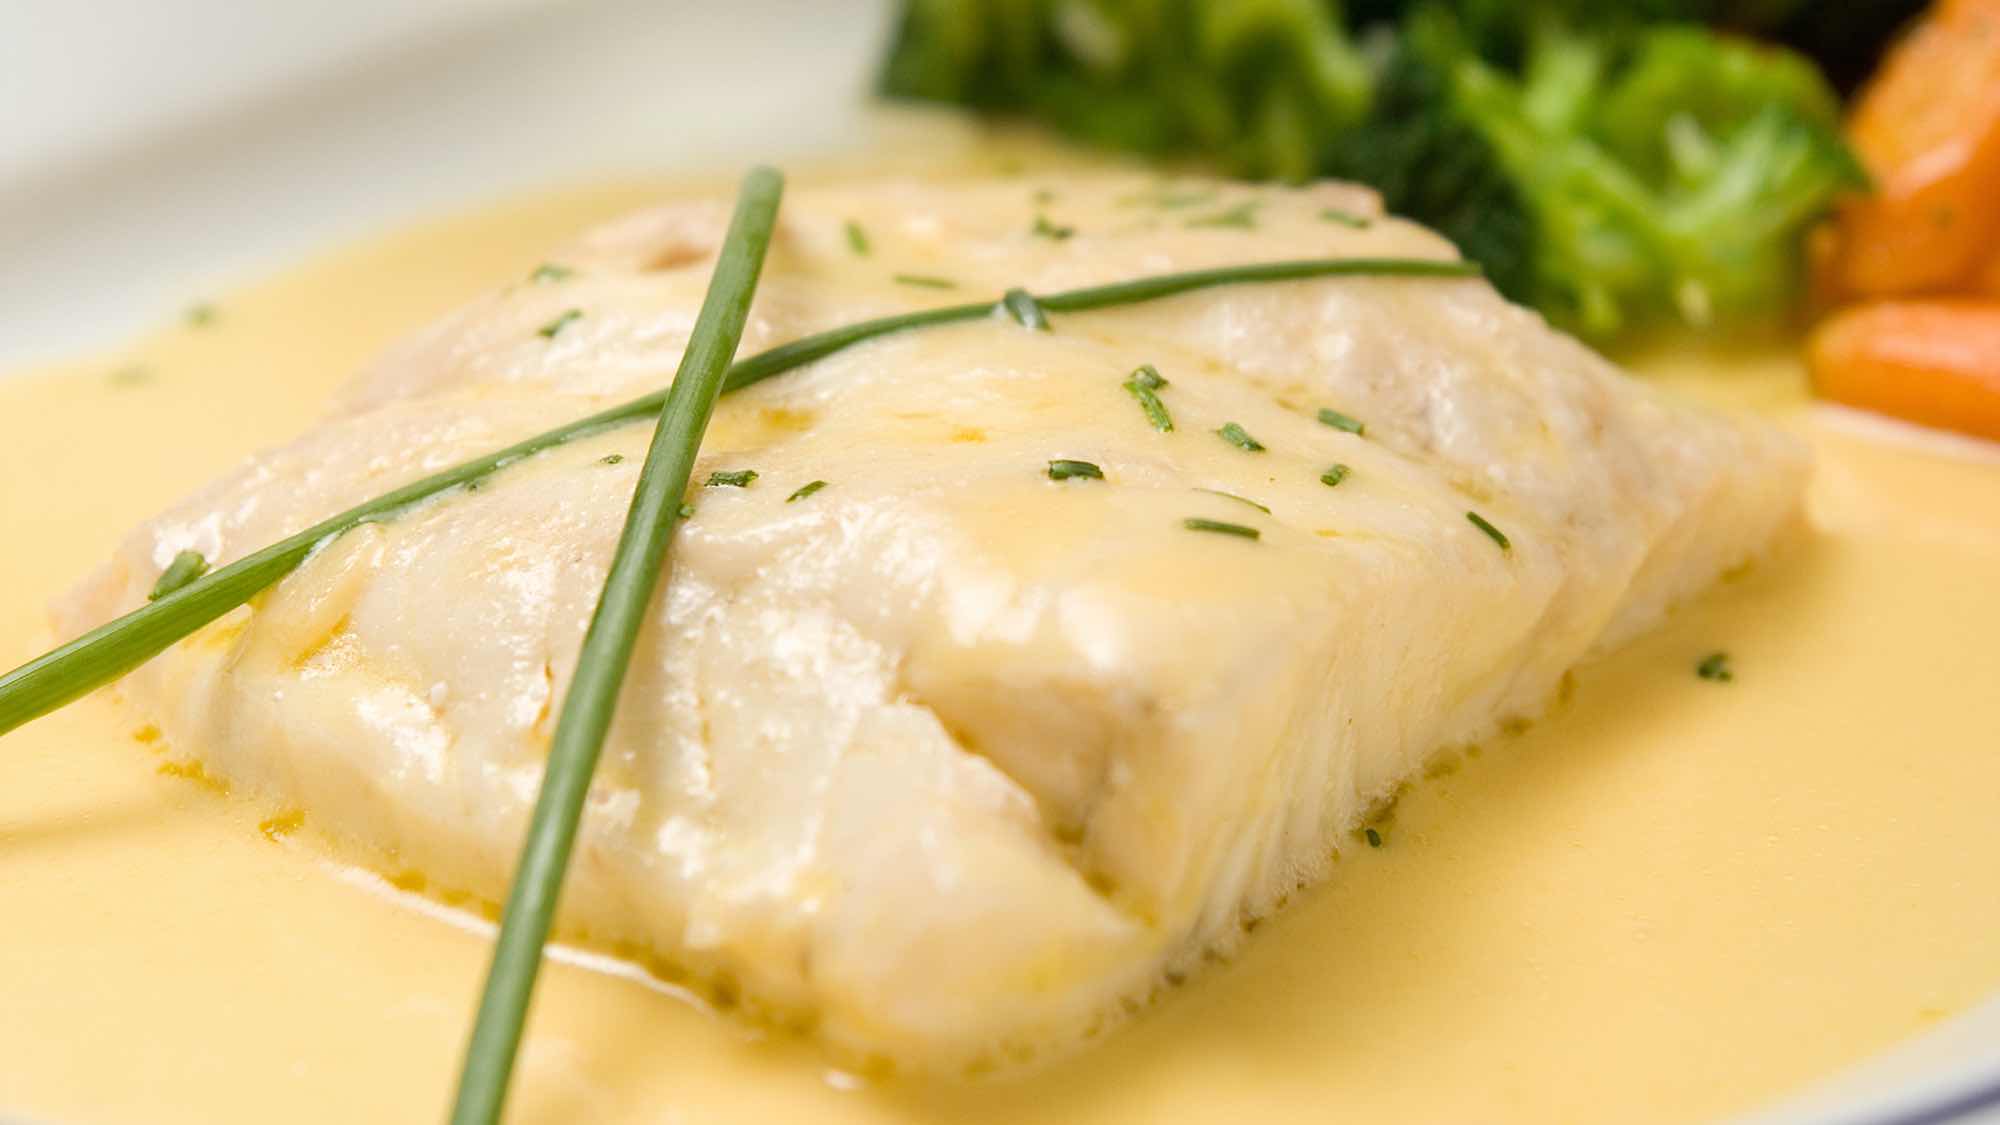 Какой соус подходит к рыбе: какой соус приготовить?
какой соус подходит к рыбе: какой соус приготовить?